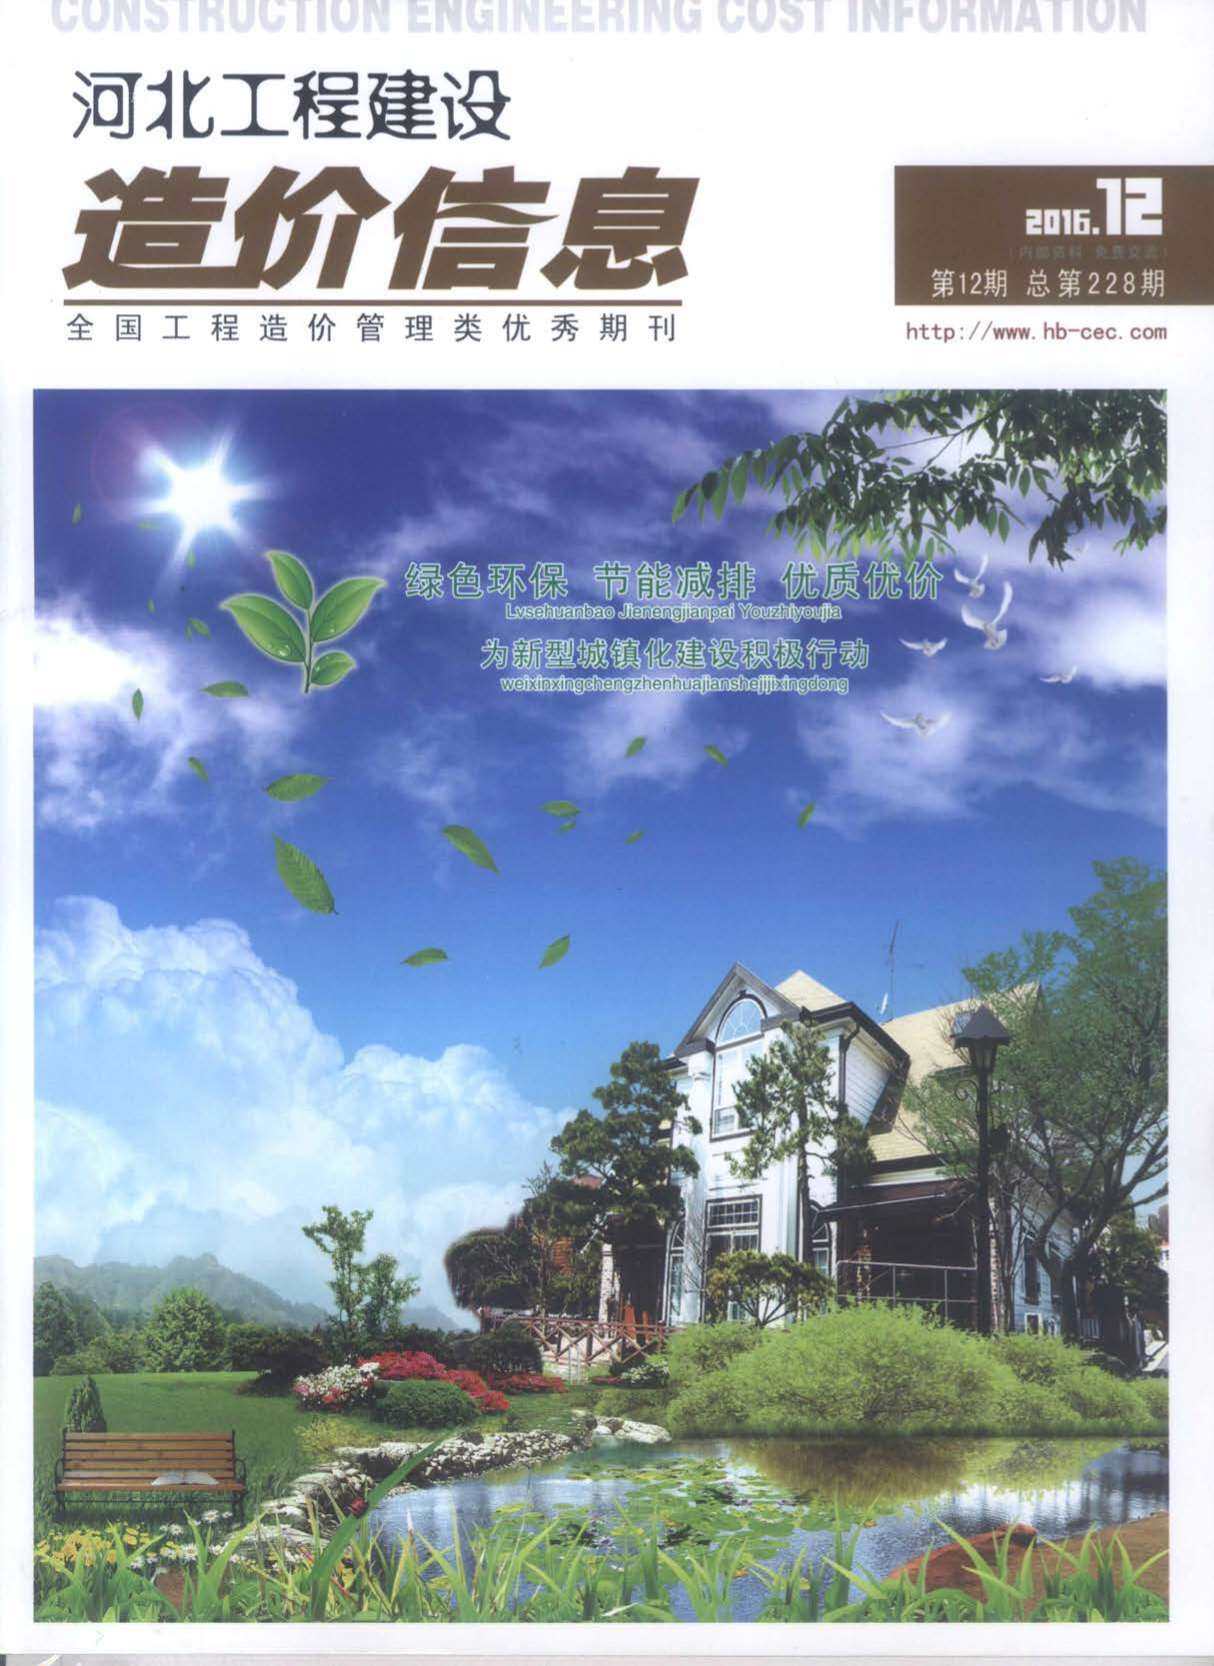 河北省2016年12月工程造价信息期刊